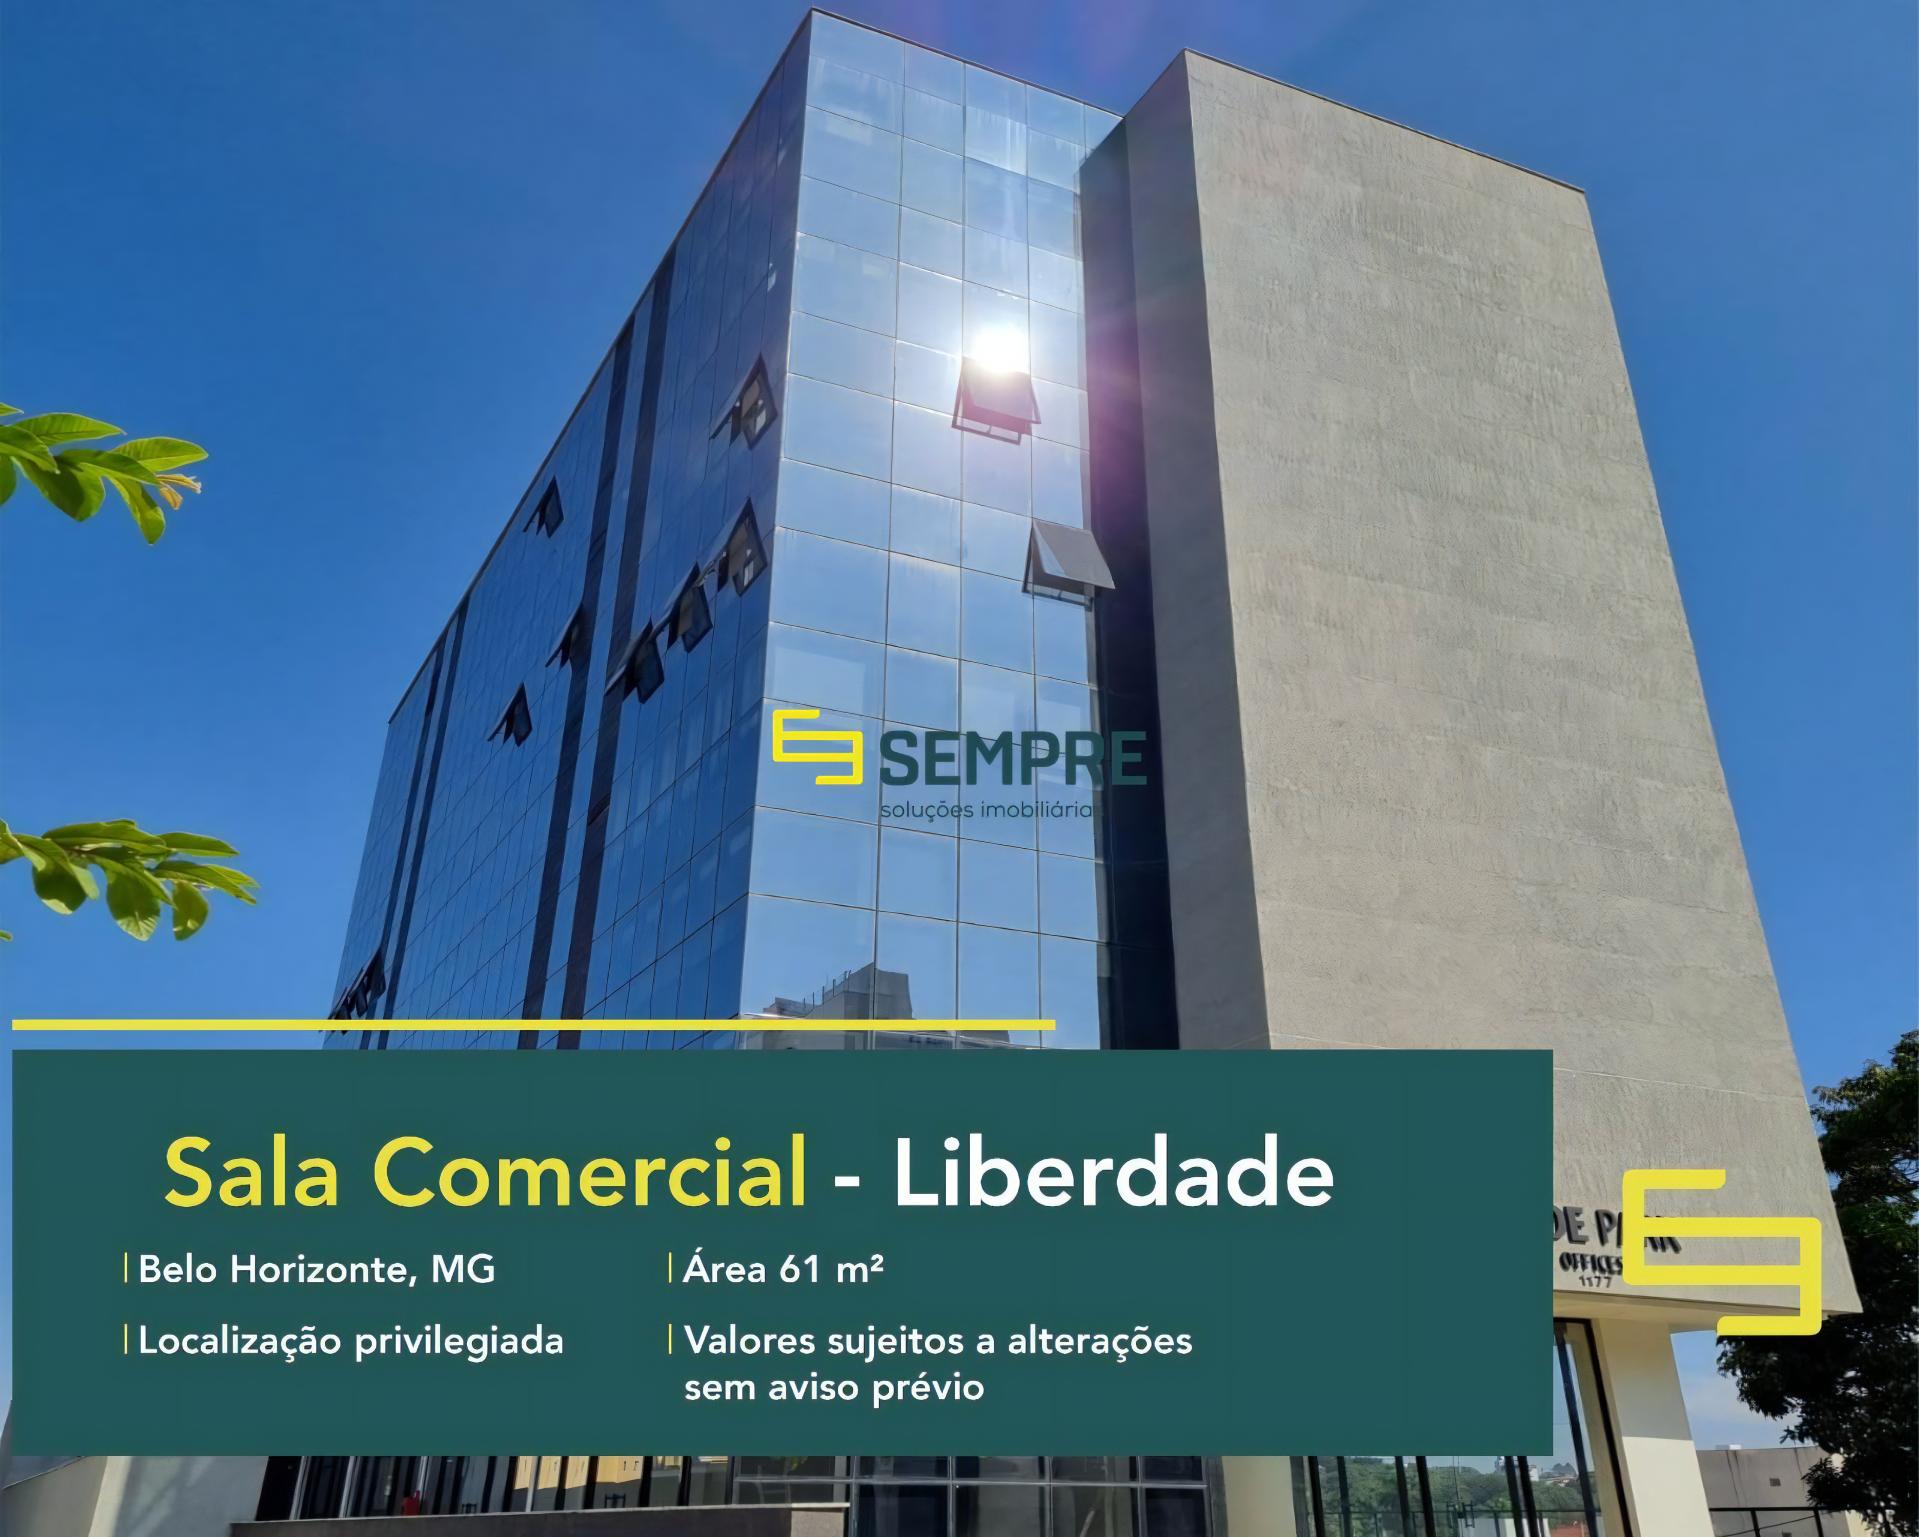 Sala comercial no bairro Liberdade à venda em Belo Horizonte, excelente localização. O estabelecimento comercial conta com área de 61 m².